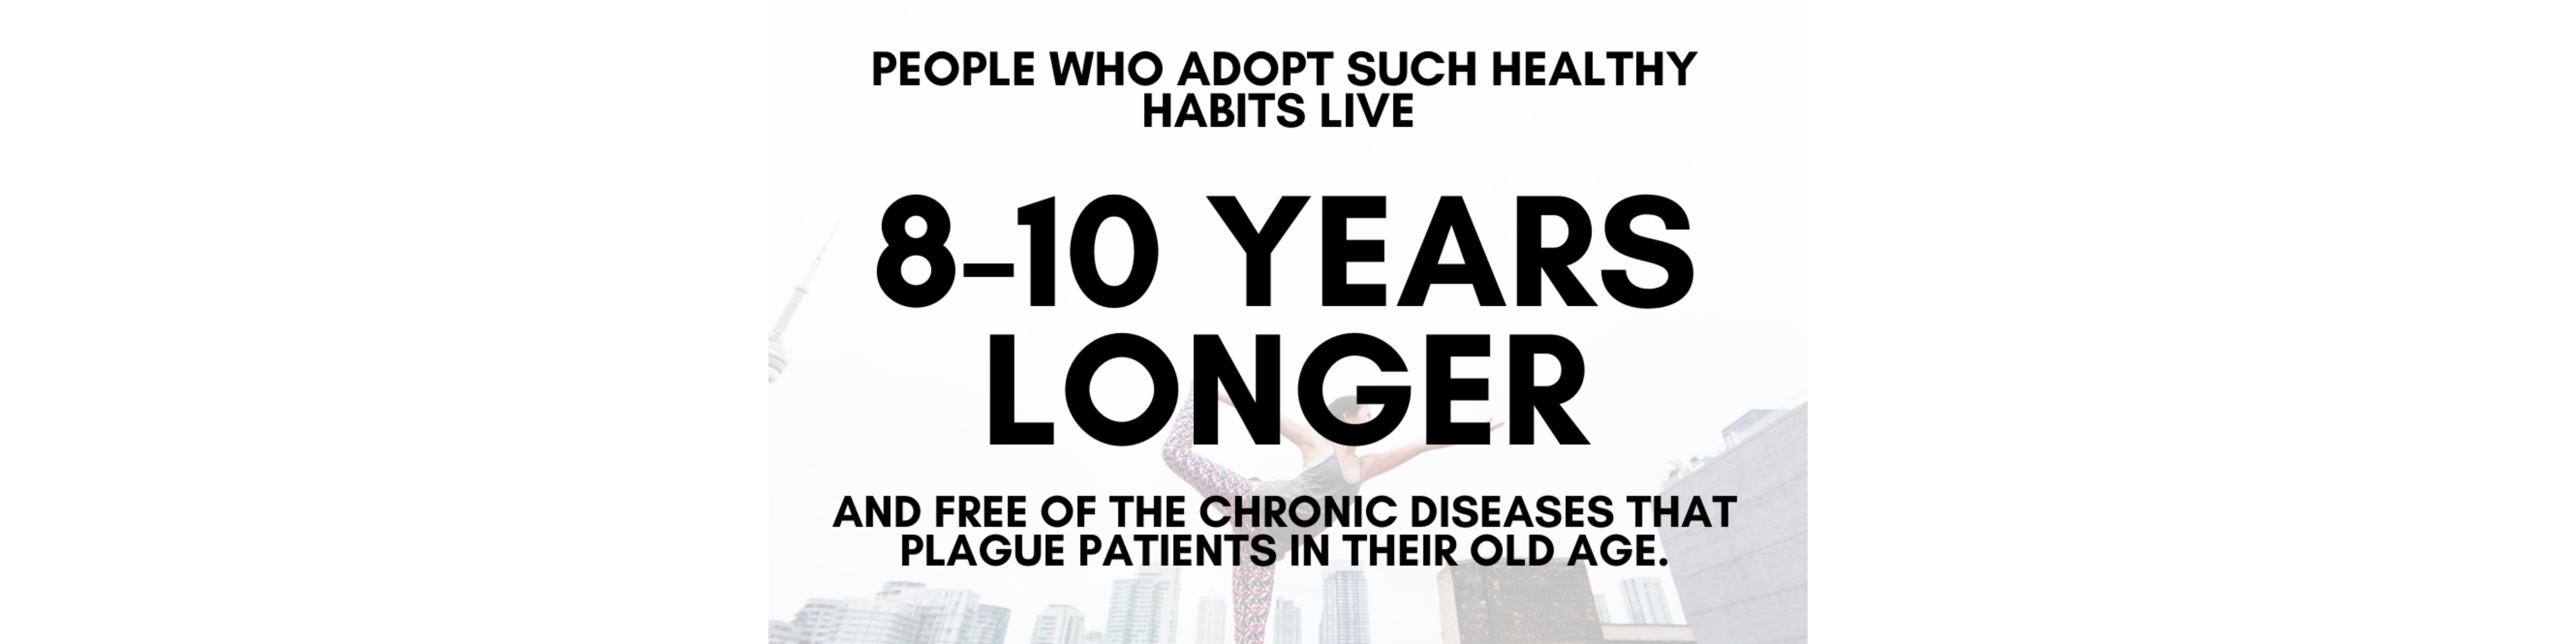 Las personas que adoptan hábitos saludables viven entre 8 y 10 años más